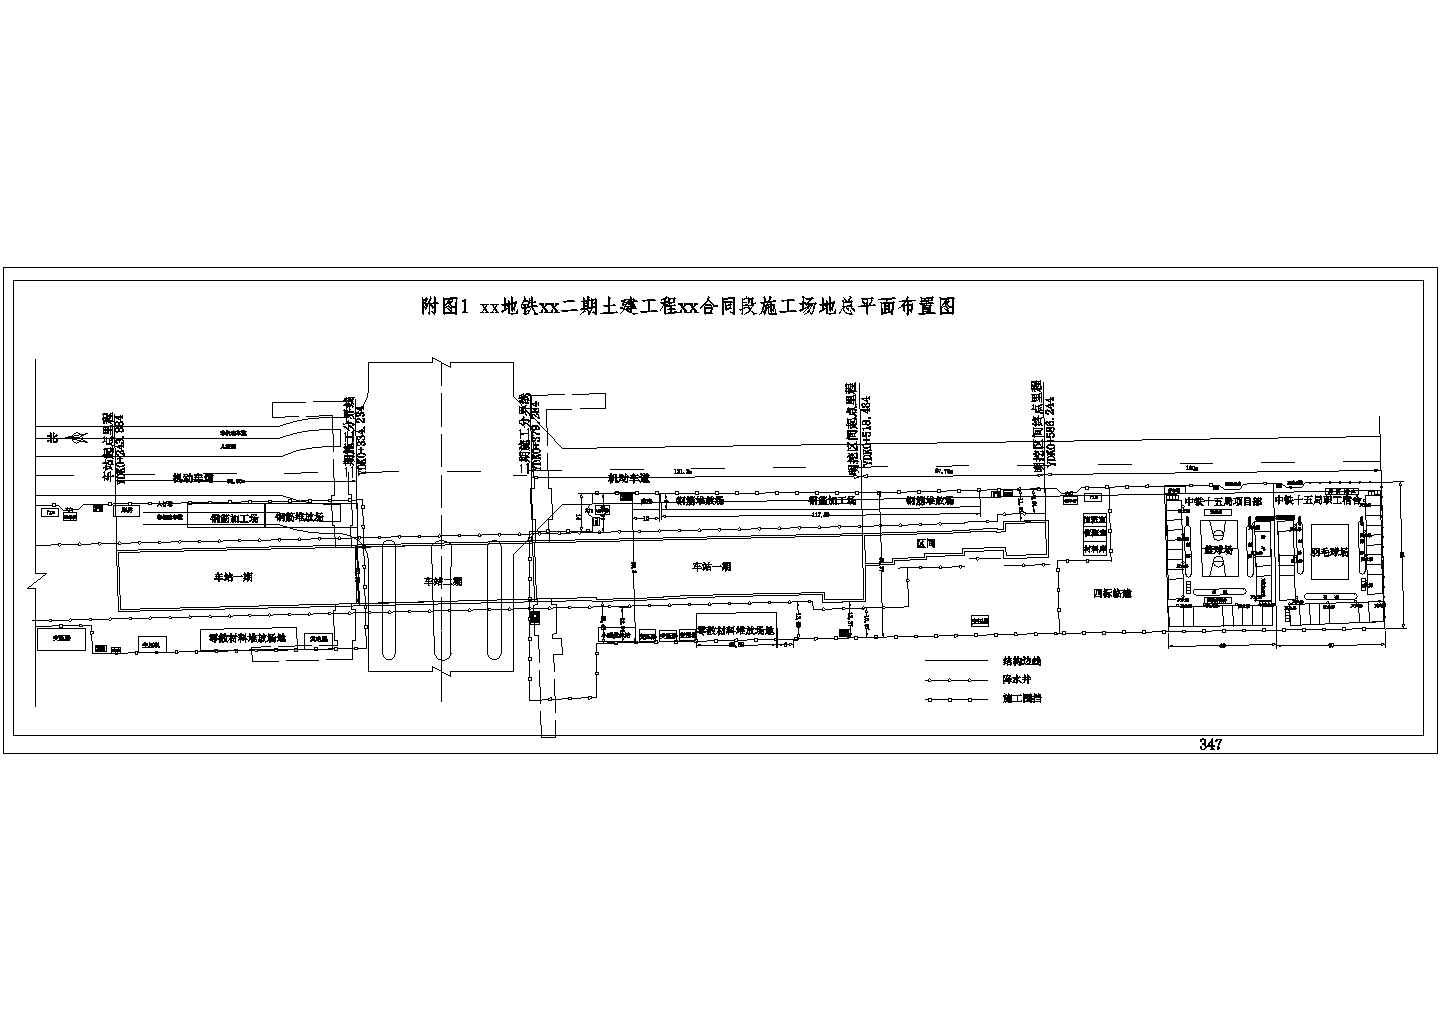 地铁二期土建工程合同段施工场地总平面布置图